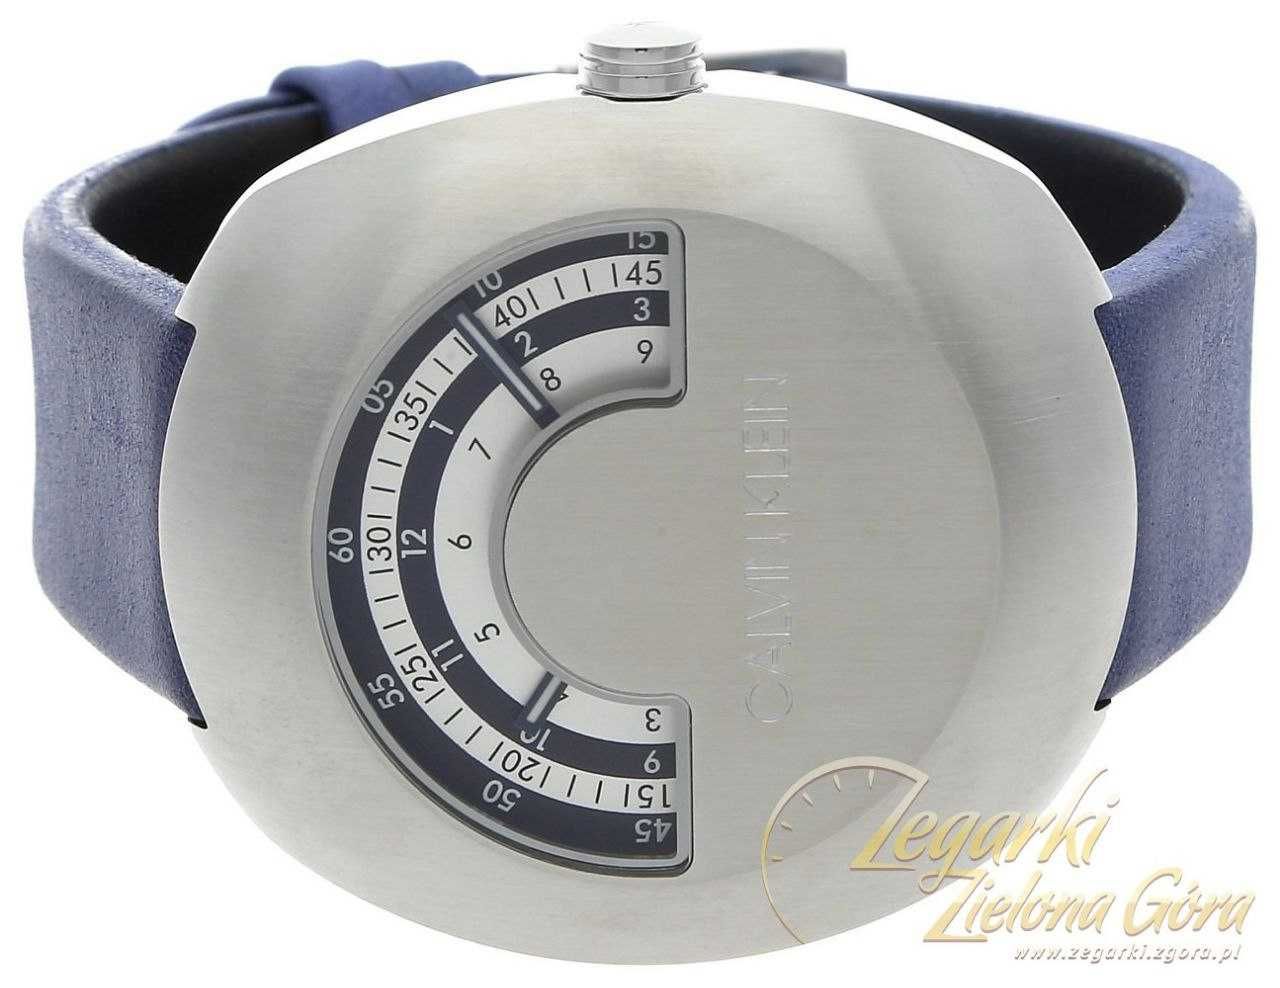 Швейцарские наручные часы Calvin Klein K9M311VN